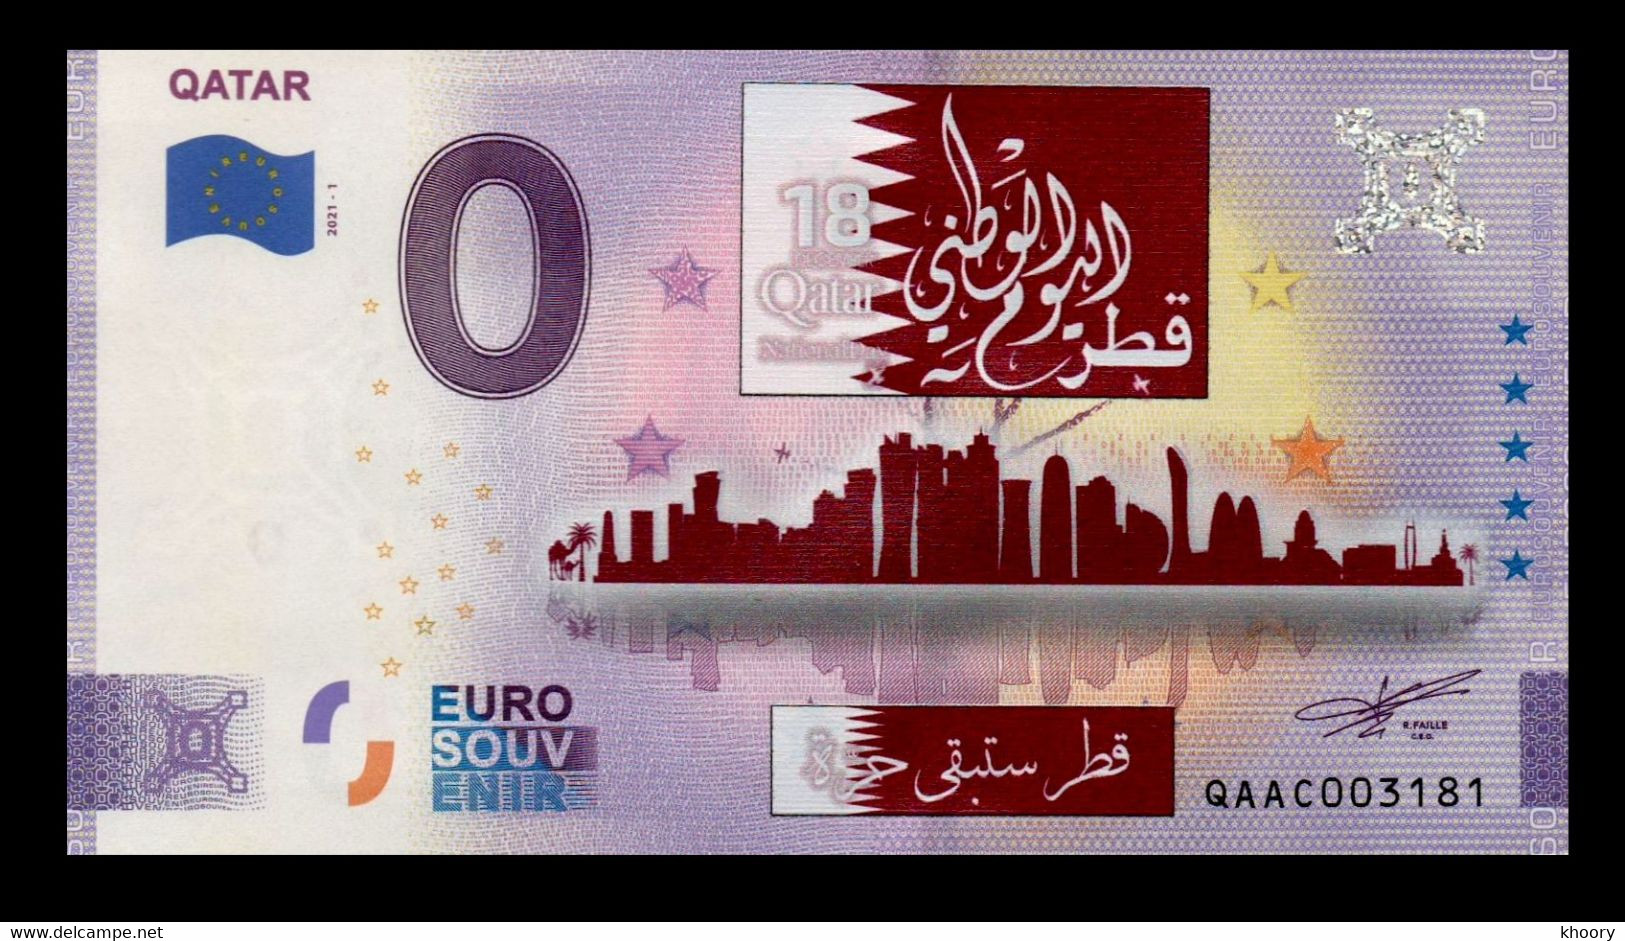 Qatar National Day 2021 0 Euro Color P-EURO - Qatar